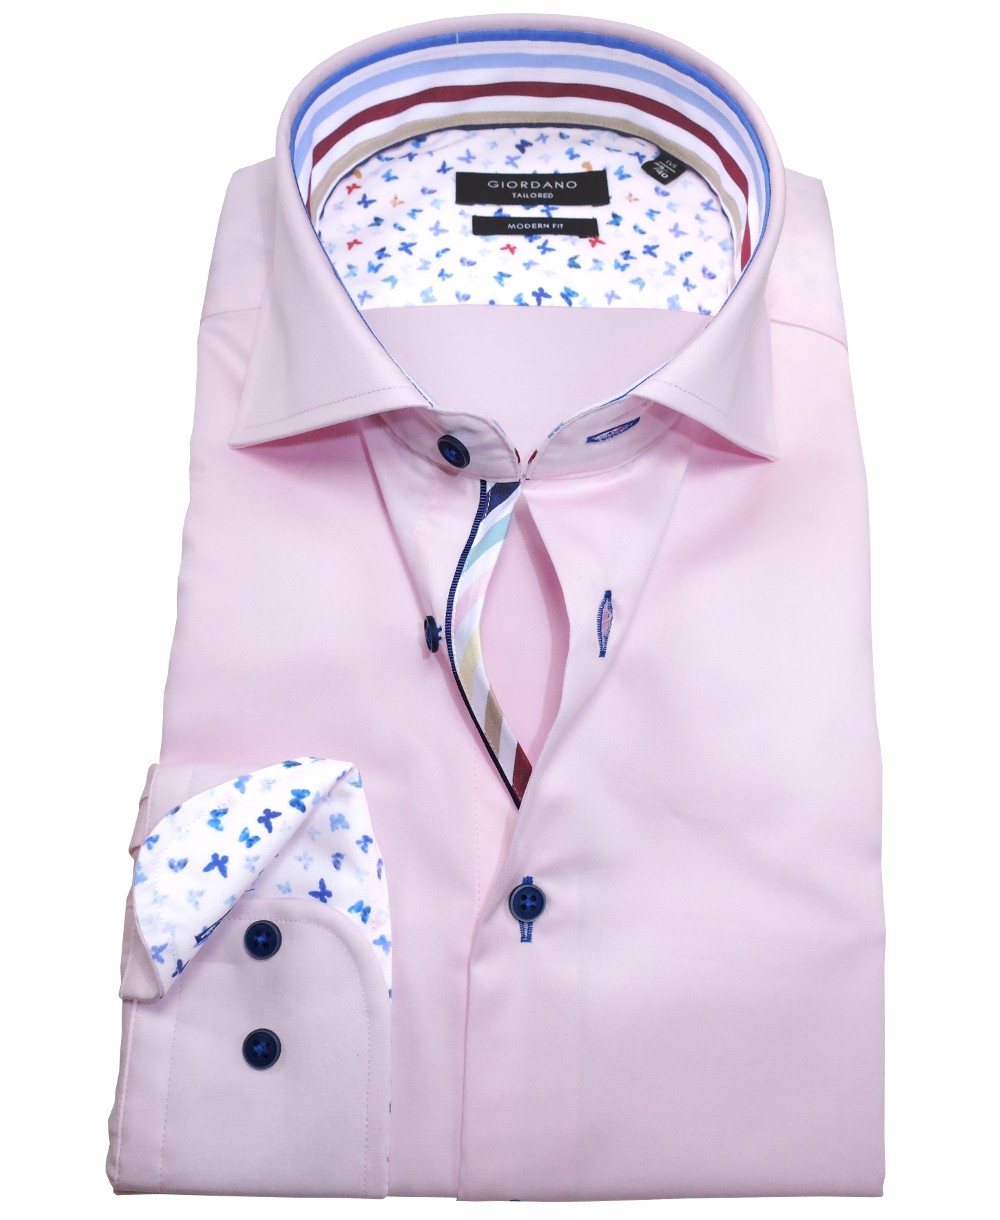 Modern Fit weiss Langarmhemd fairen Patches mit Giordano zu Herrenmode führender Marken rosa - Hochwertige bunten